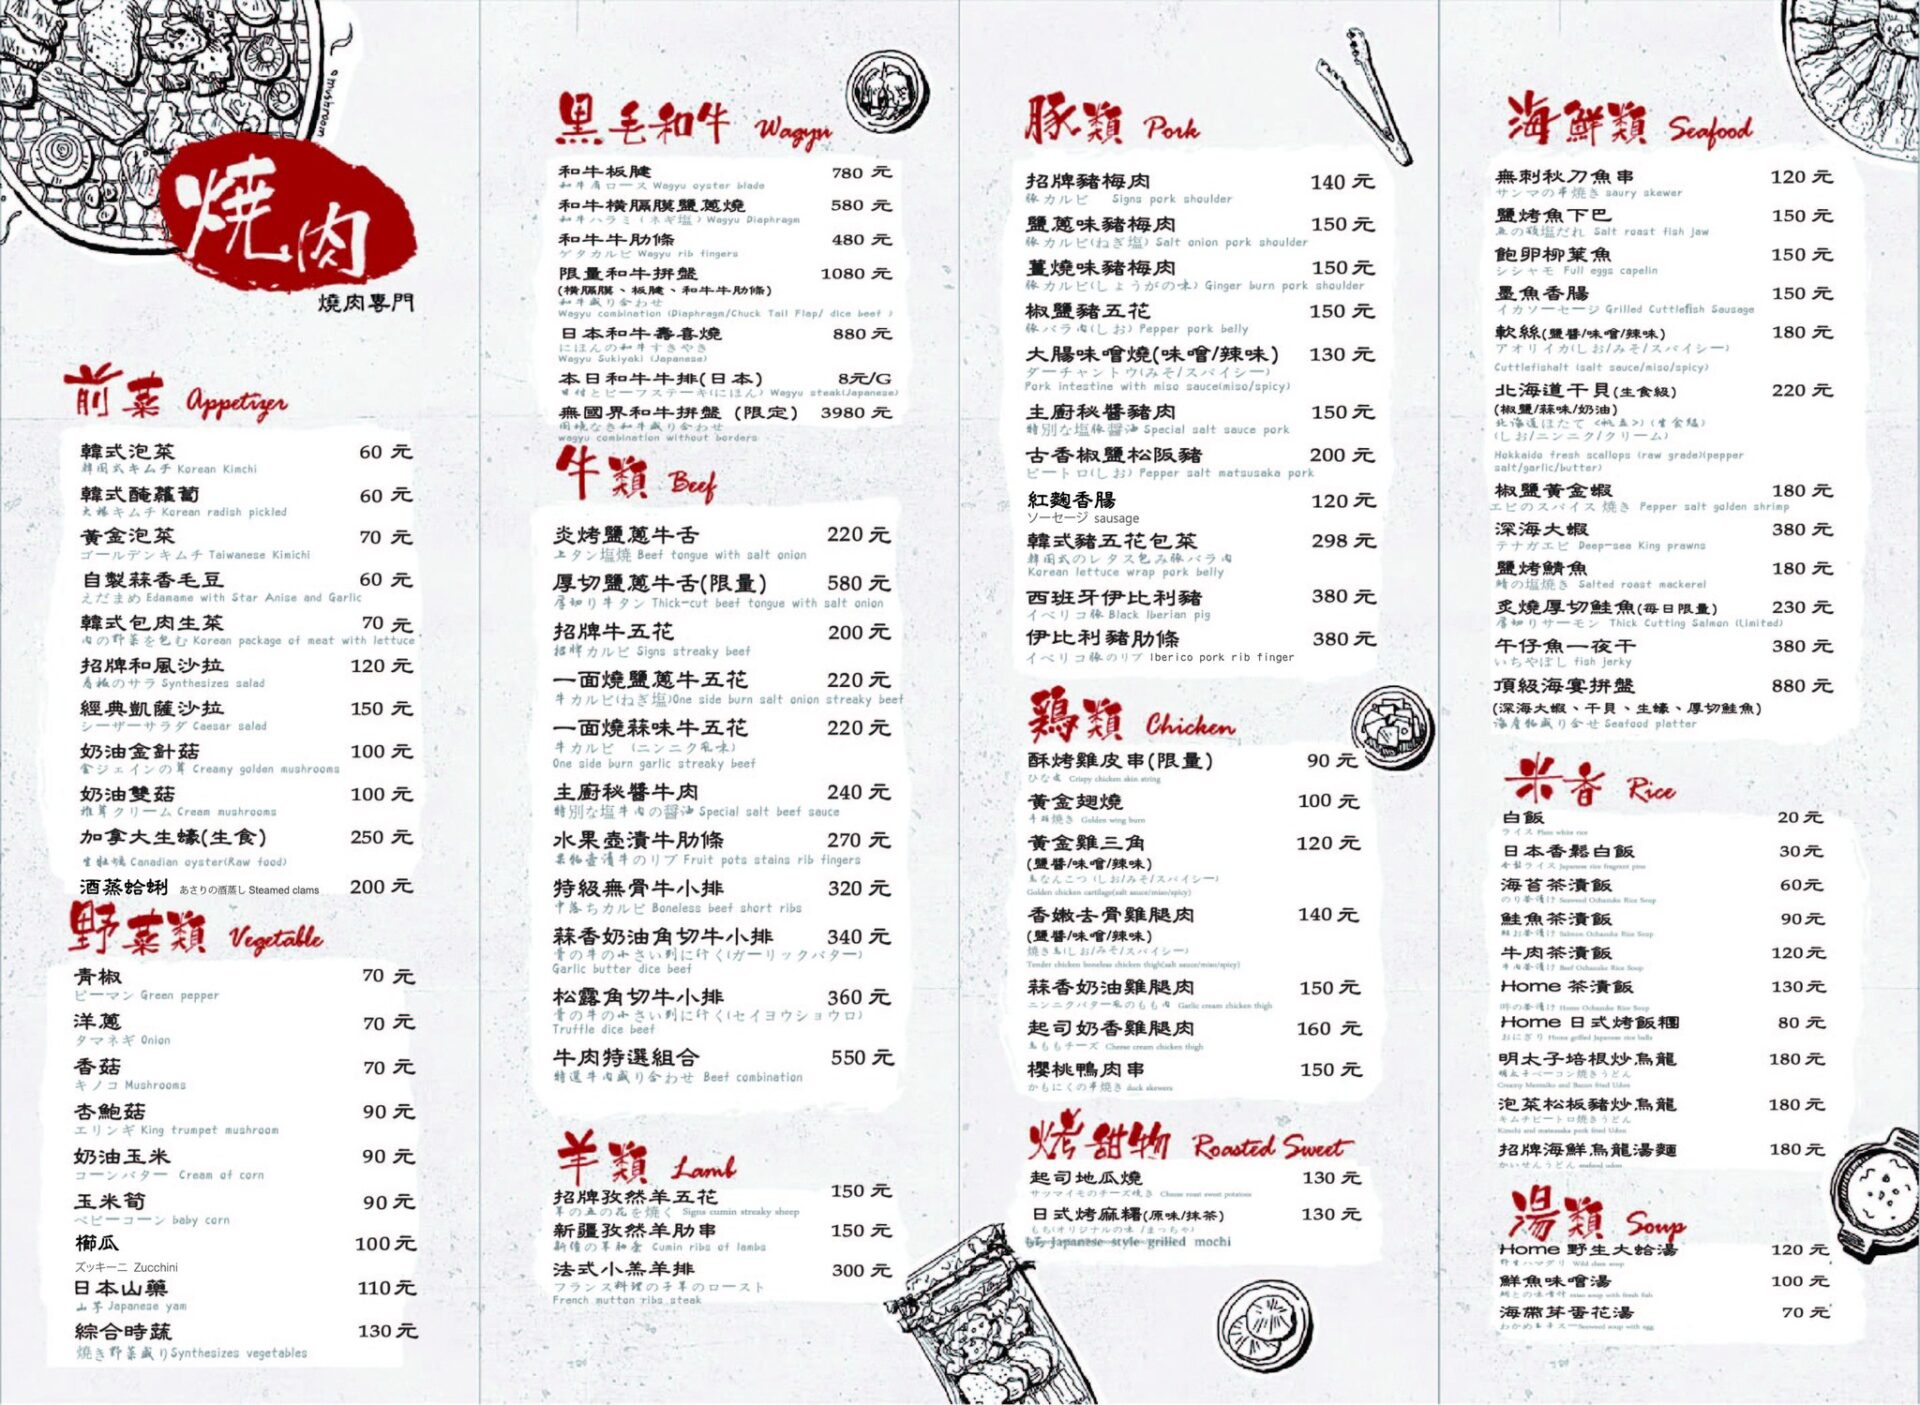 【吽燒肉】台北市民大道美食，很多明星藝人推薦的燒肉店 !